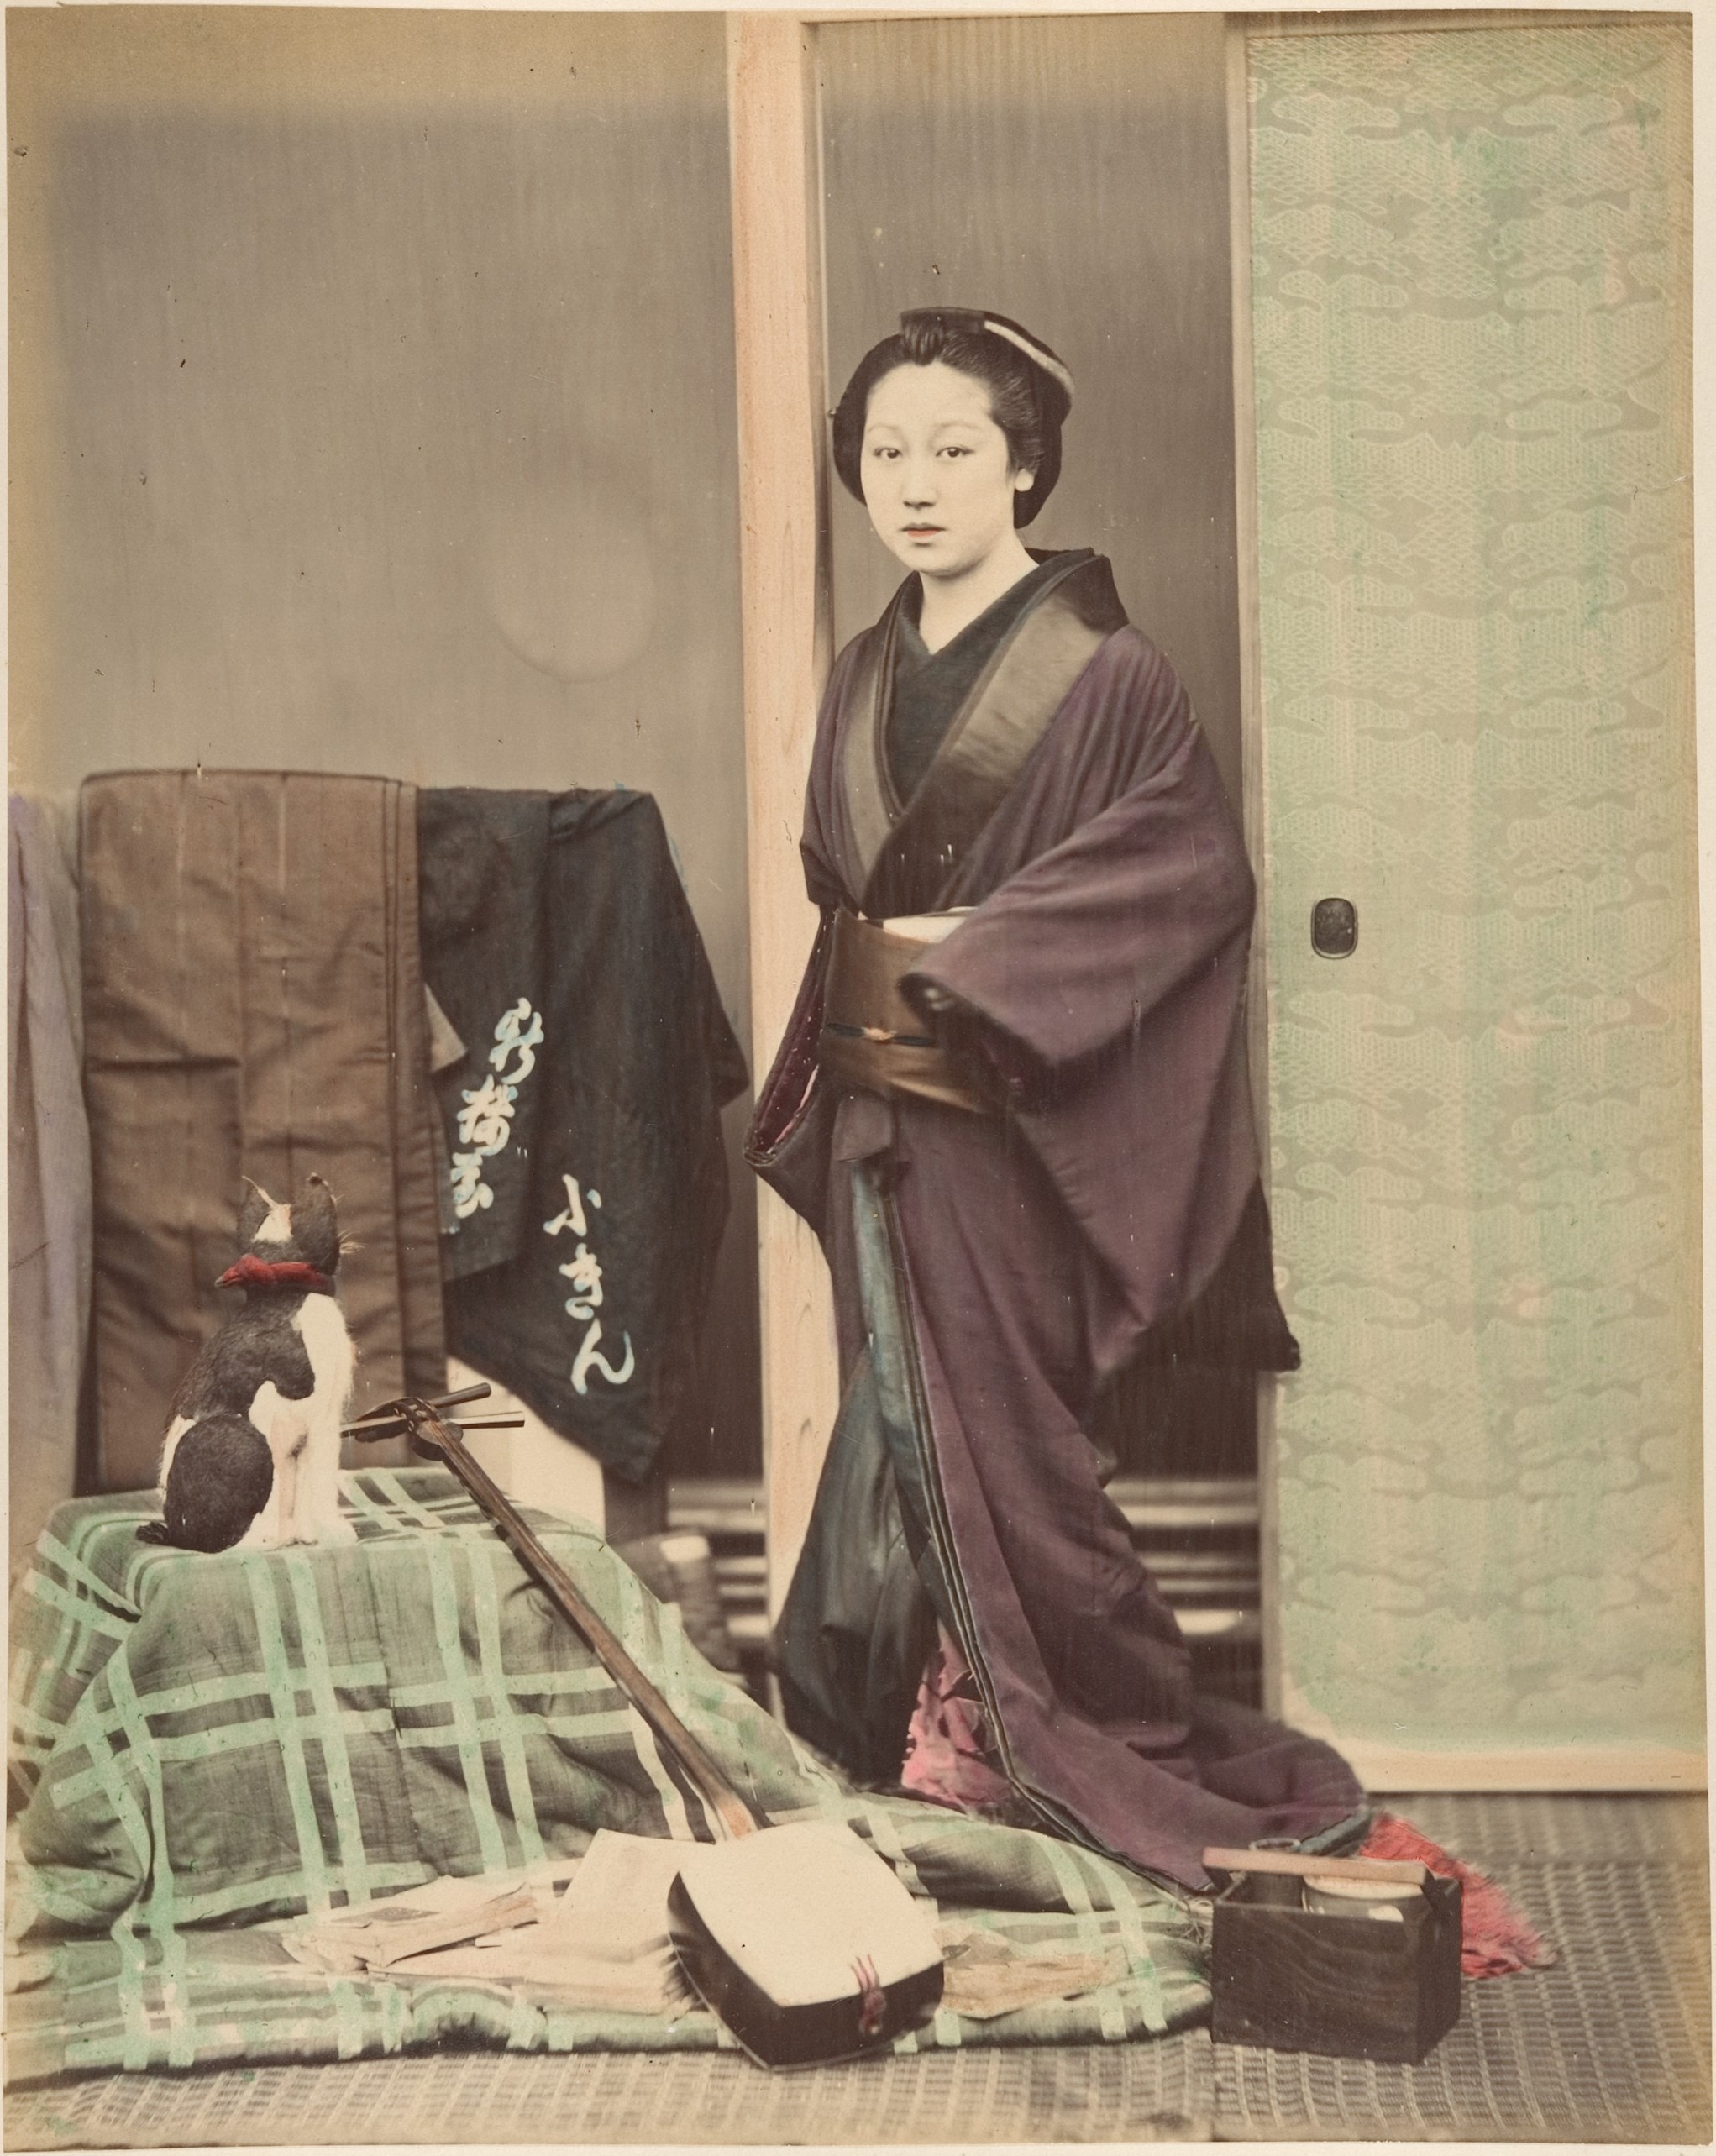 手洗いをしっかりしよう！Japaaan		写真家・鈴木真一の1870年代（明治初期）の横浜写真RANKING ランキング